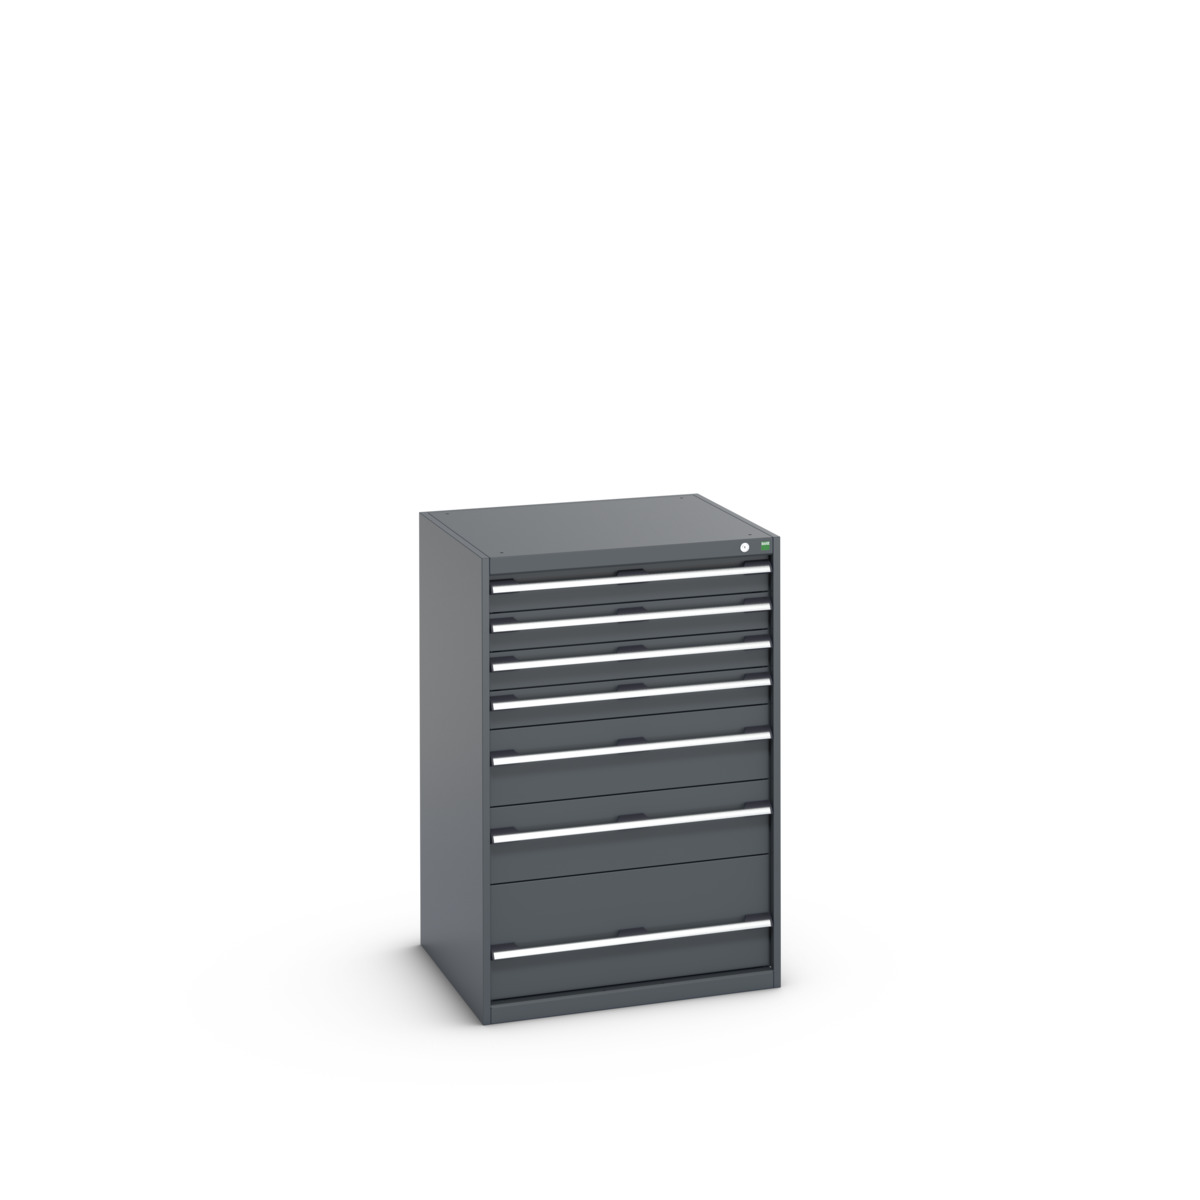 40028032.77V - cubio drawer cabinet